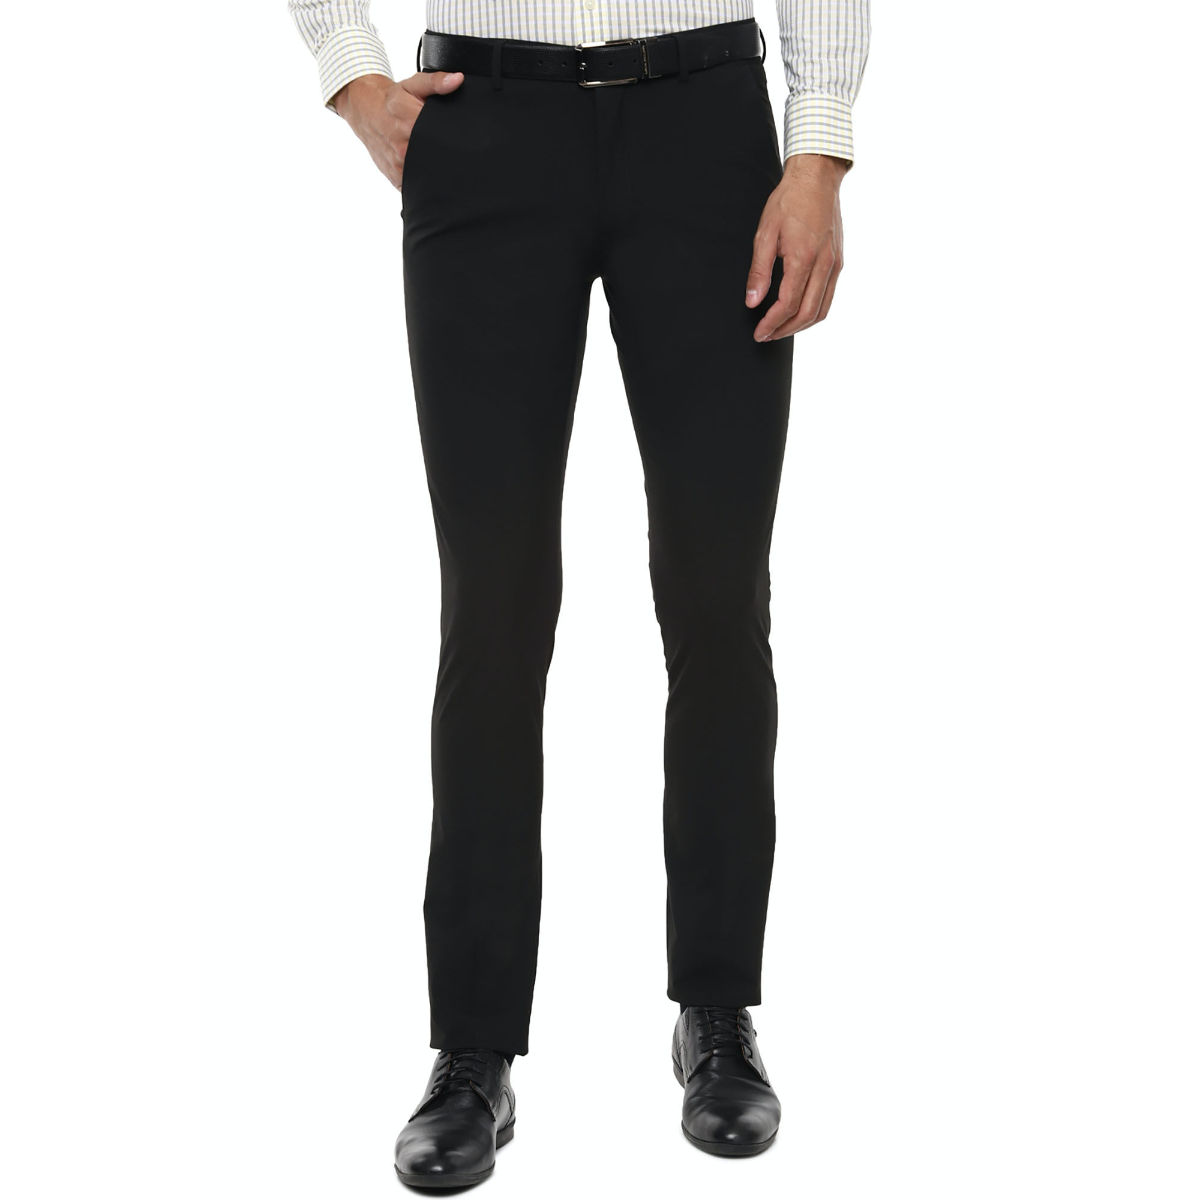 Buy Black Trousers  Pants for Women by Twenty Dresses Online  Ajiocom